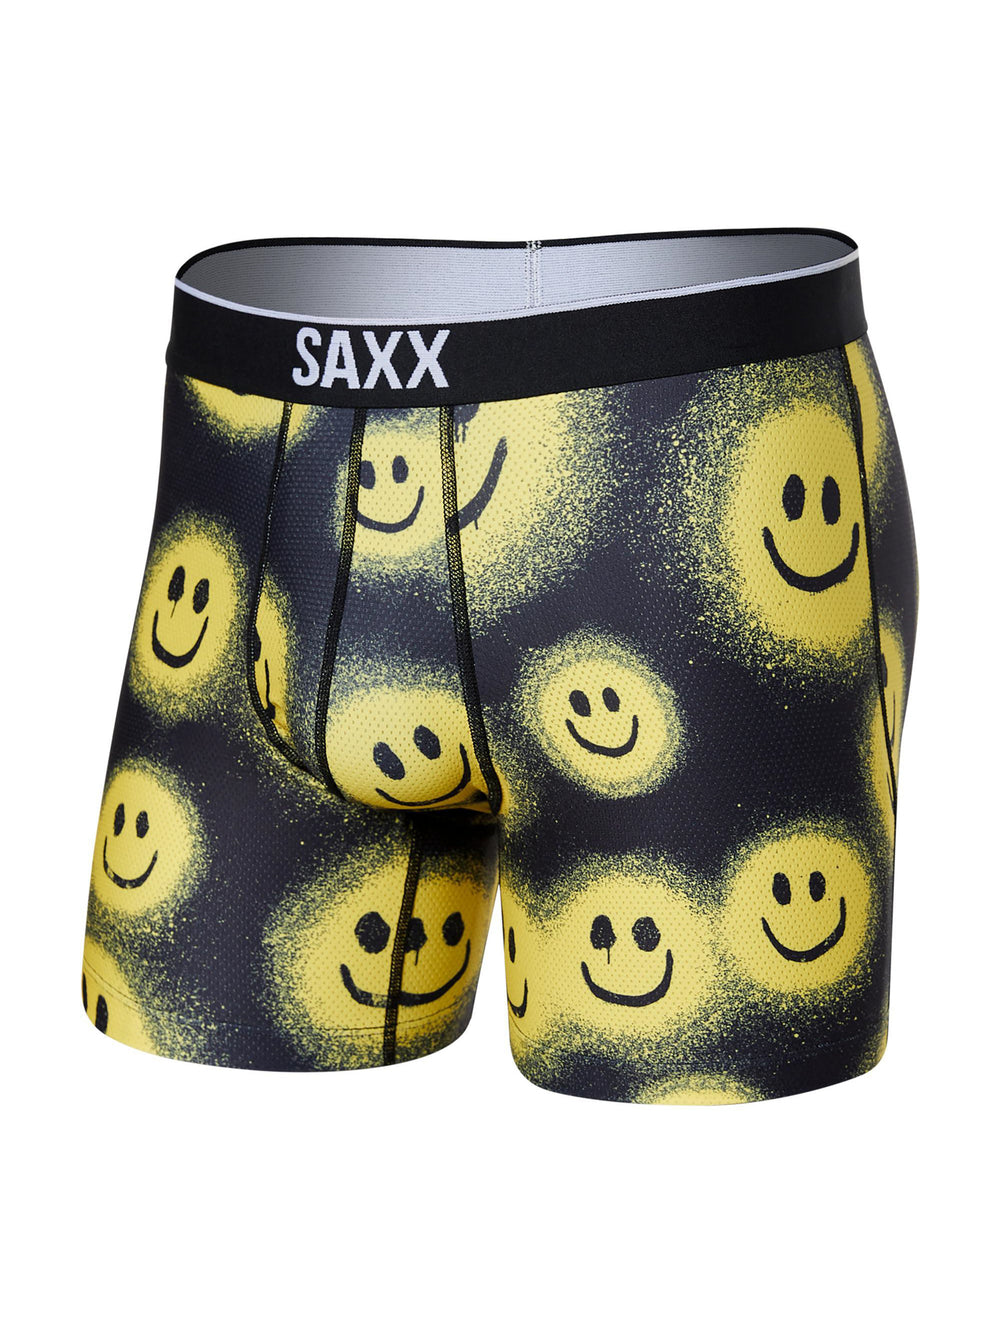 SAXX VOLT BOXER BRIEF- PAINTED SMILE NOIR  - CLEARANCE